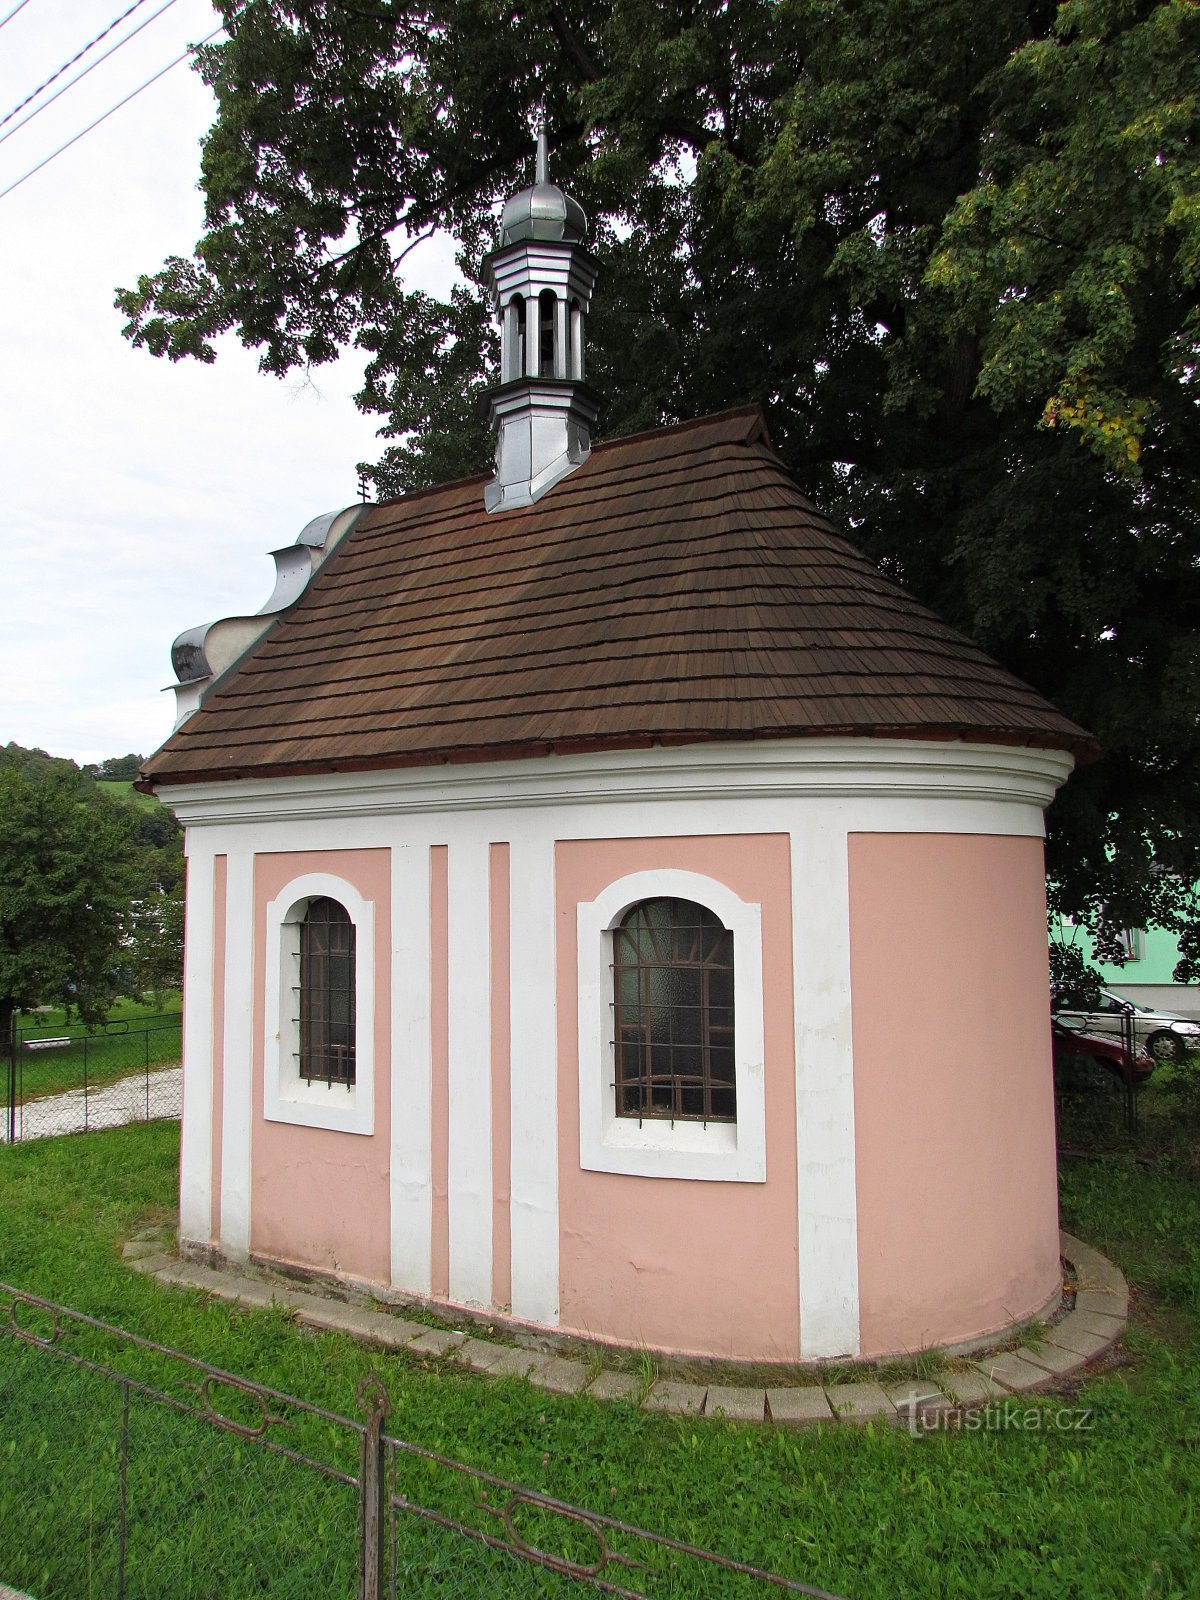 Nhà nguyện Zlatohorská của Chúa Ba Ngôi